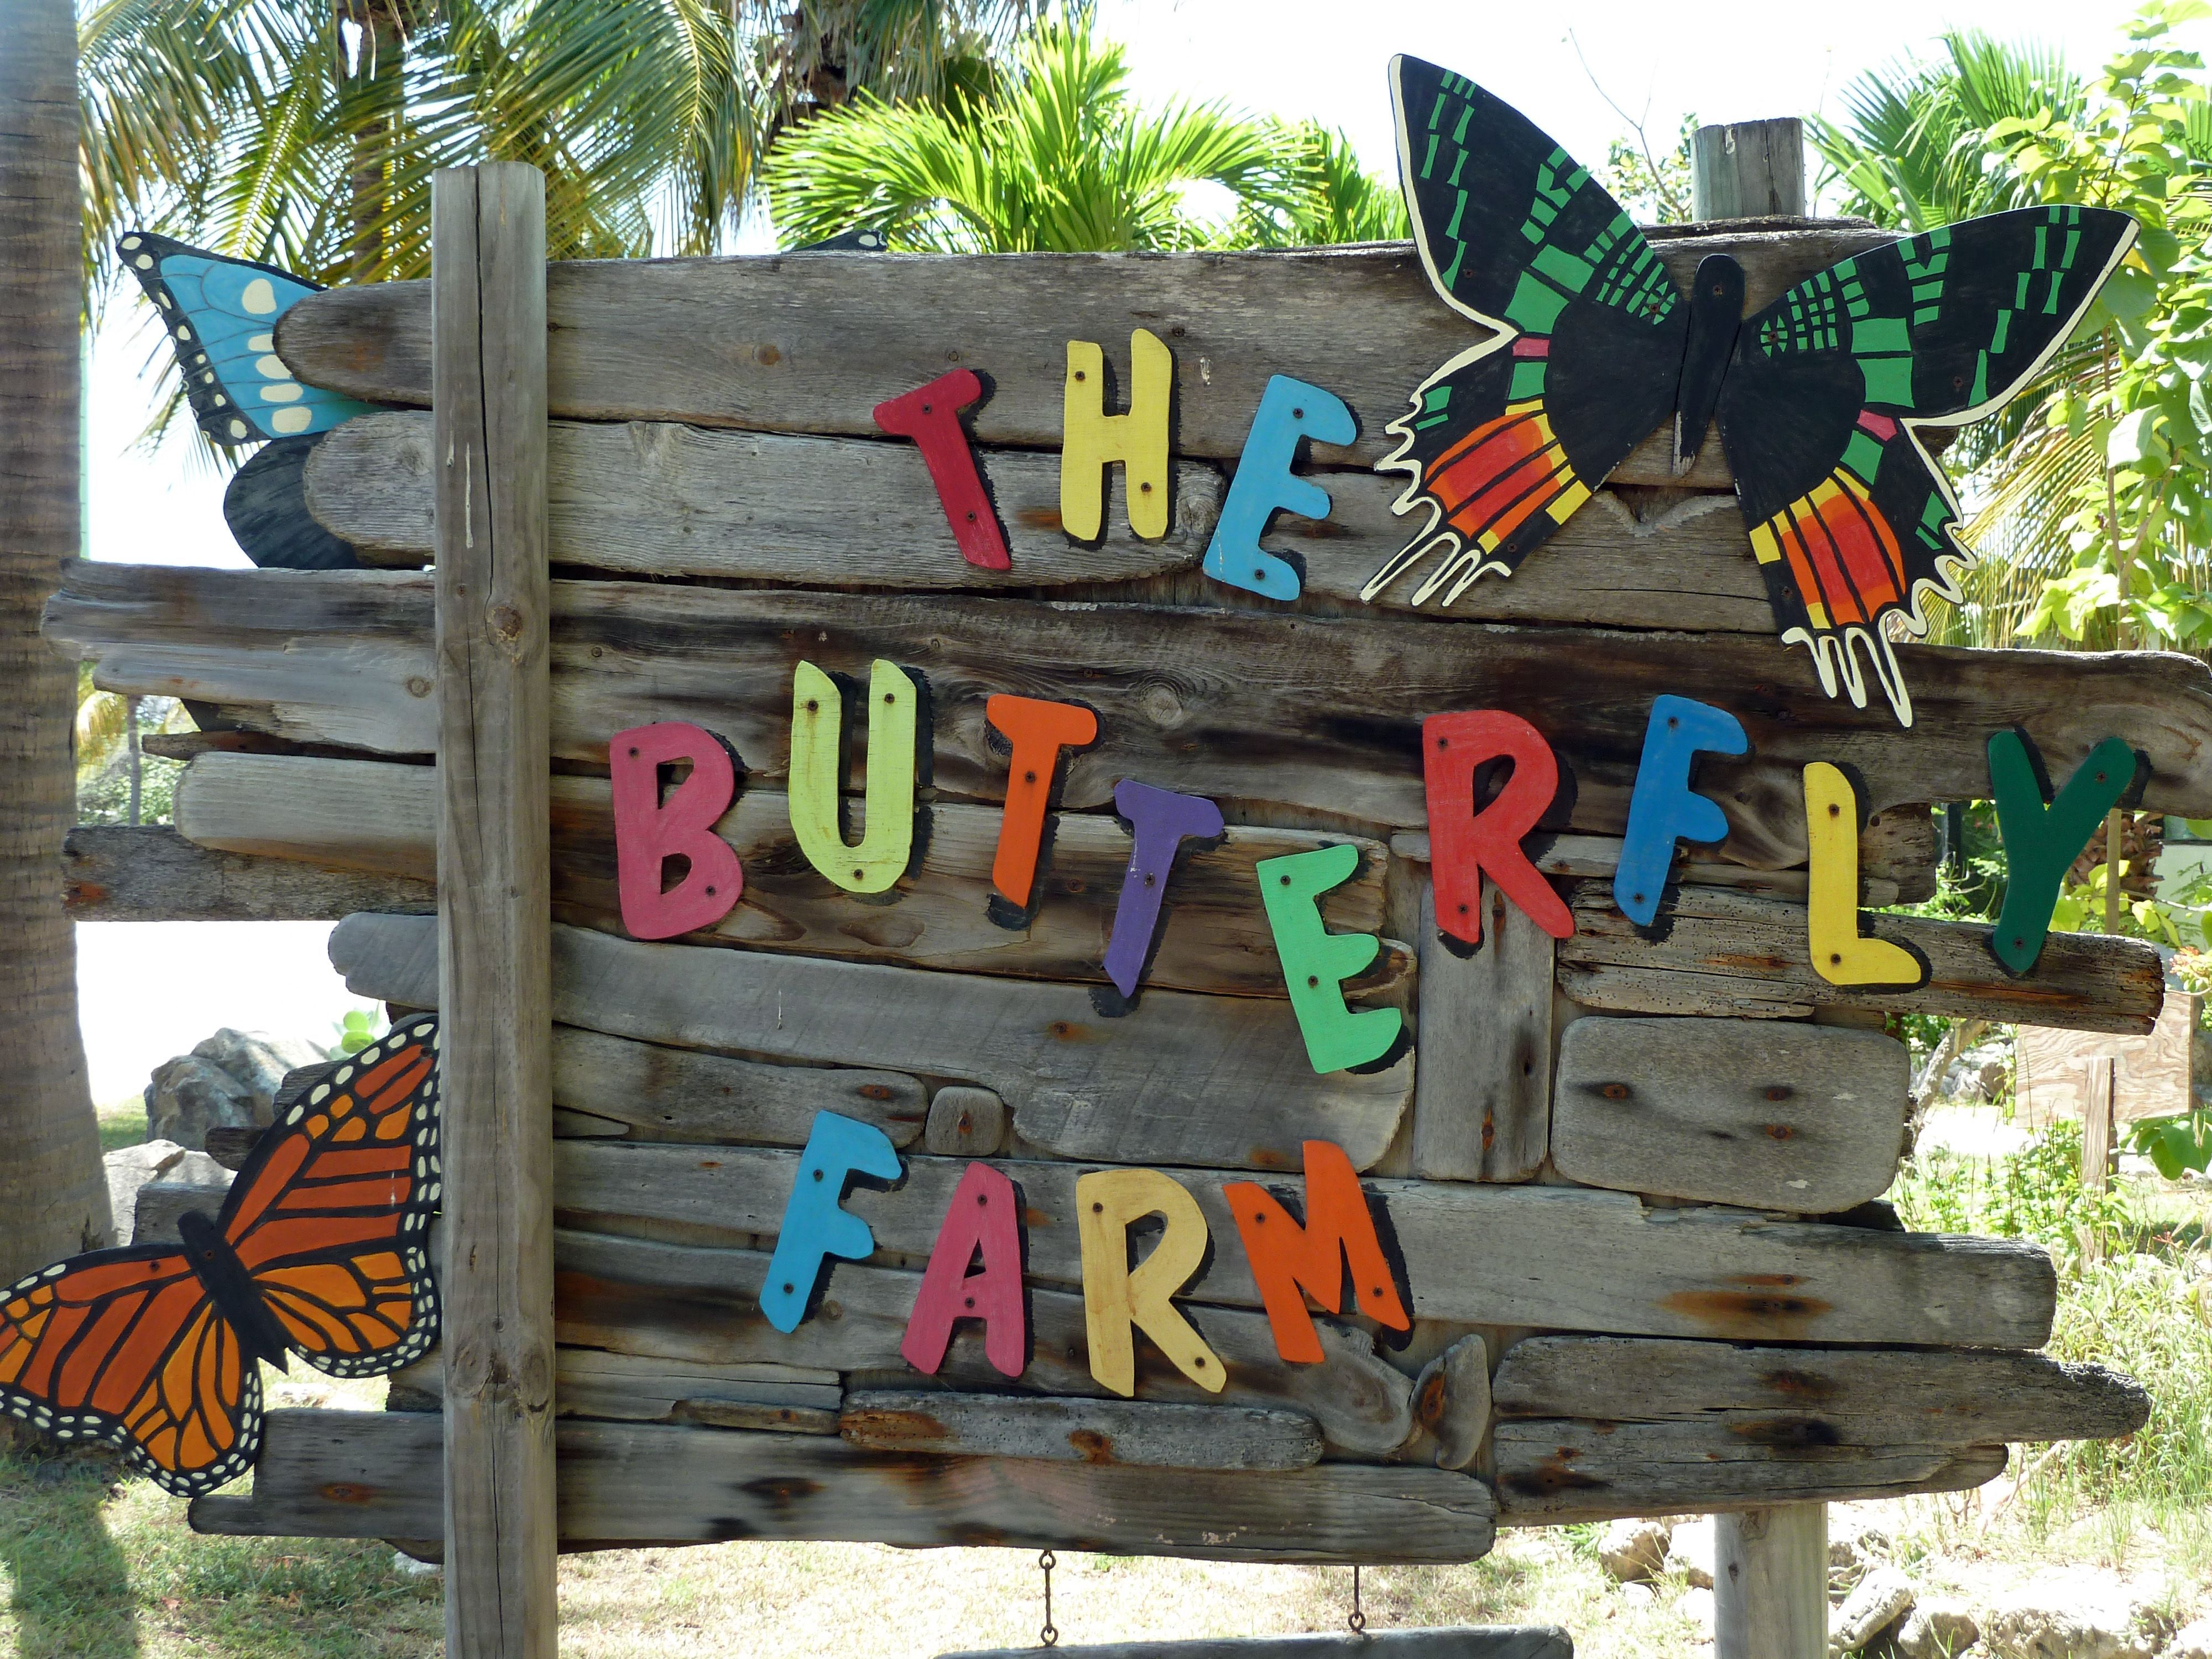 The Butterfly Farm entrance in Aruba